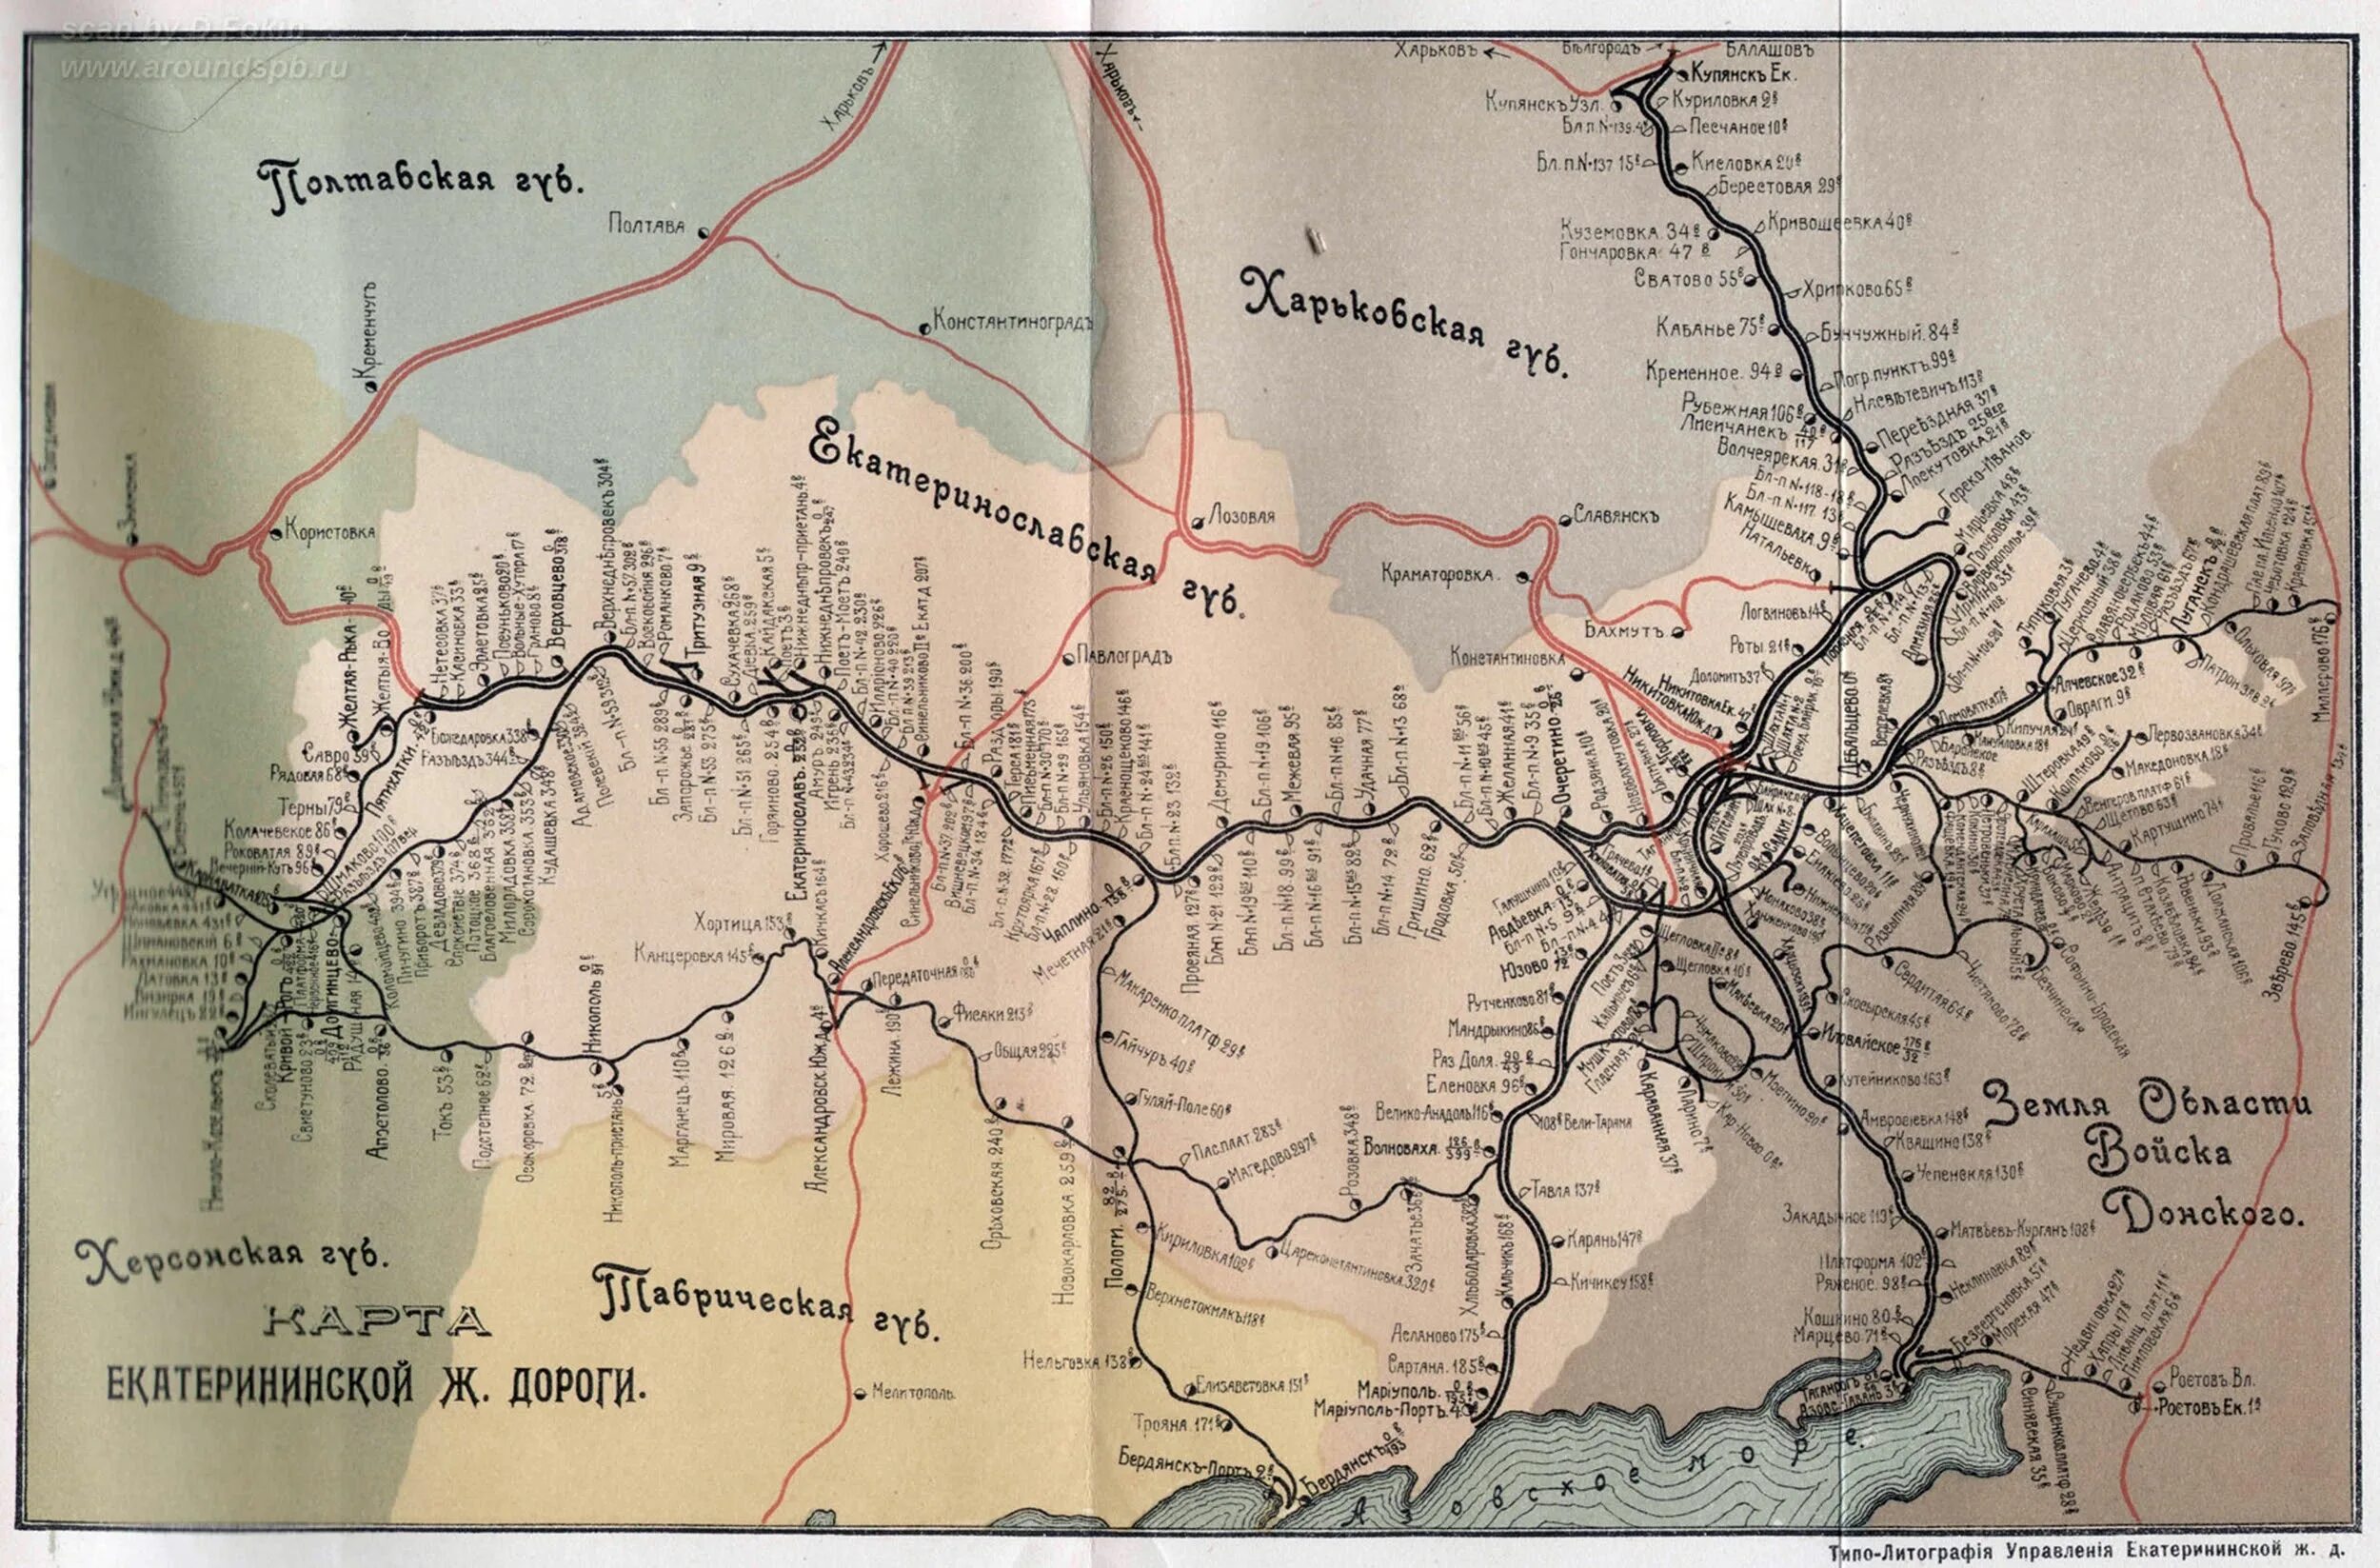 Карта Екатерининской железной дороги. Екатерининская ЖД дорога. 30 Мая 1884 года открылась Екатерининская железная дорога. Екатерининская ЖД на карте.